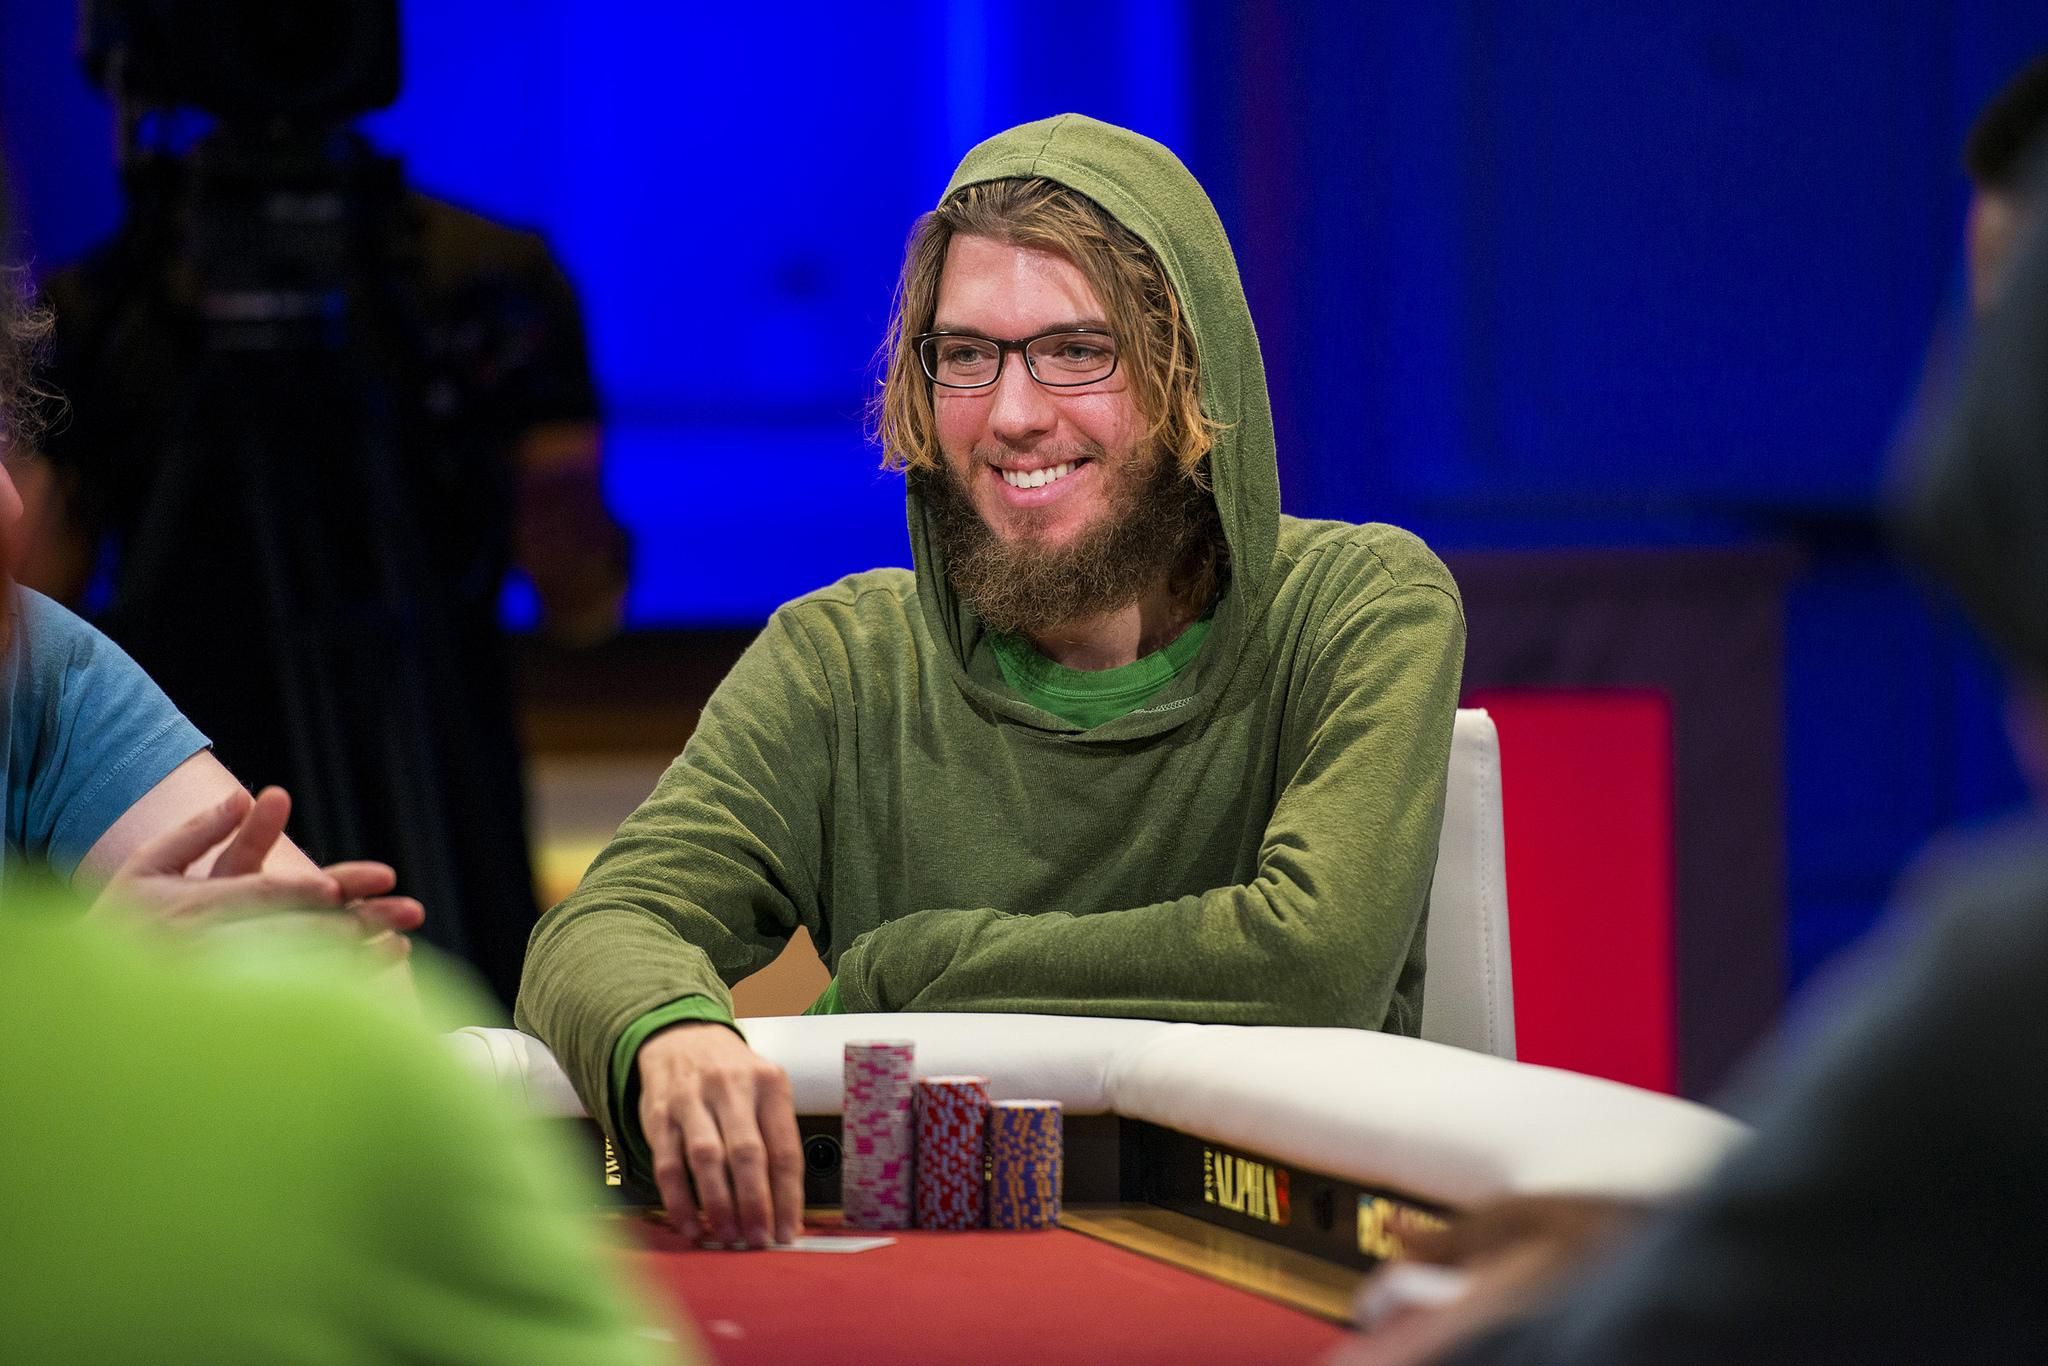 Троє американців поділили увесь фонд турніру покерних багатіїв - Покер